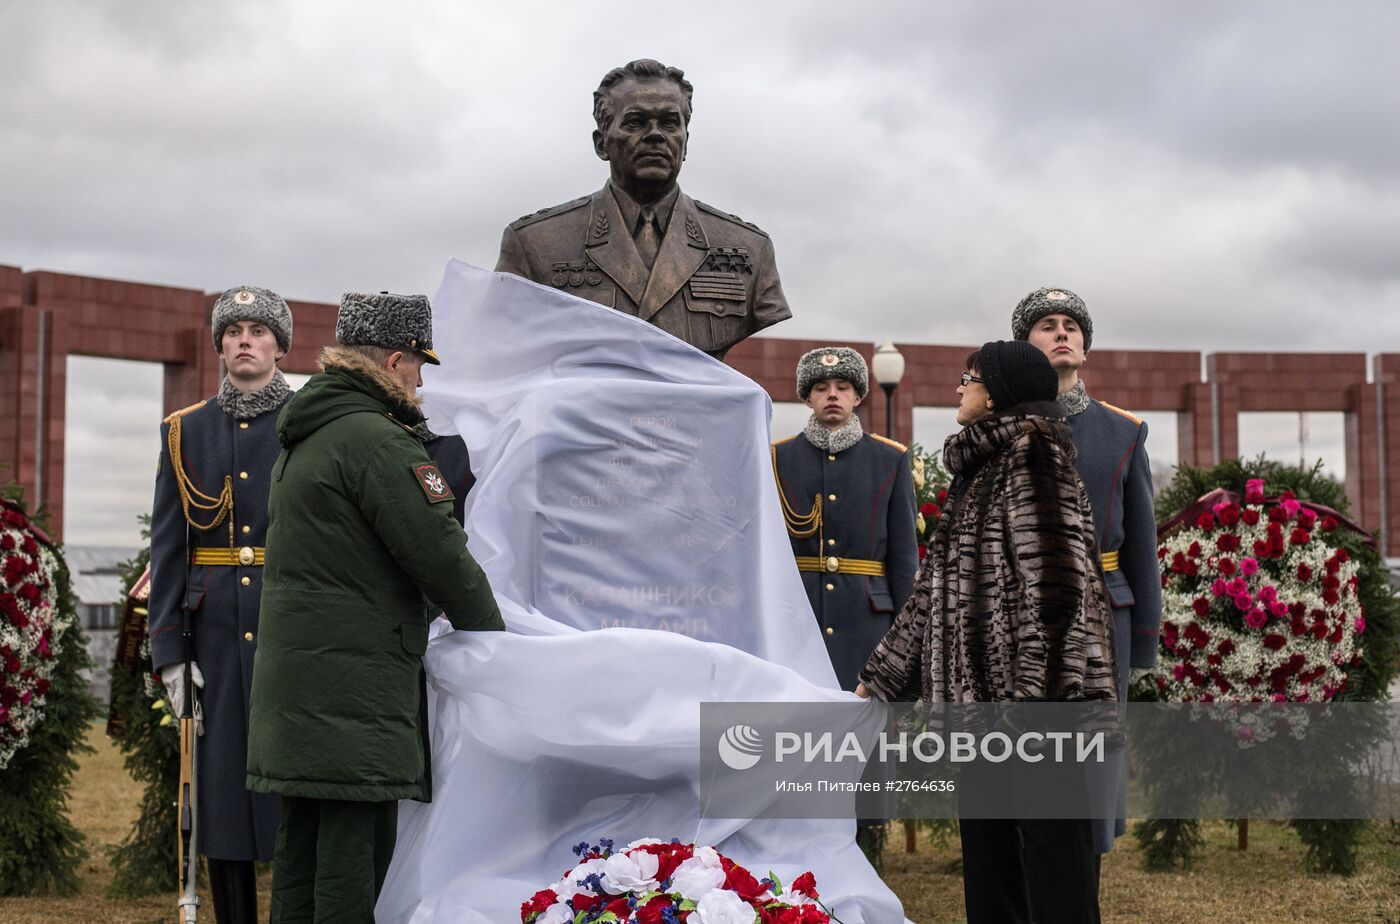 Открытие памятника Михаилу Калашникову на военном мемориальном кладбище в Мытищах